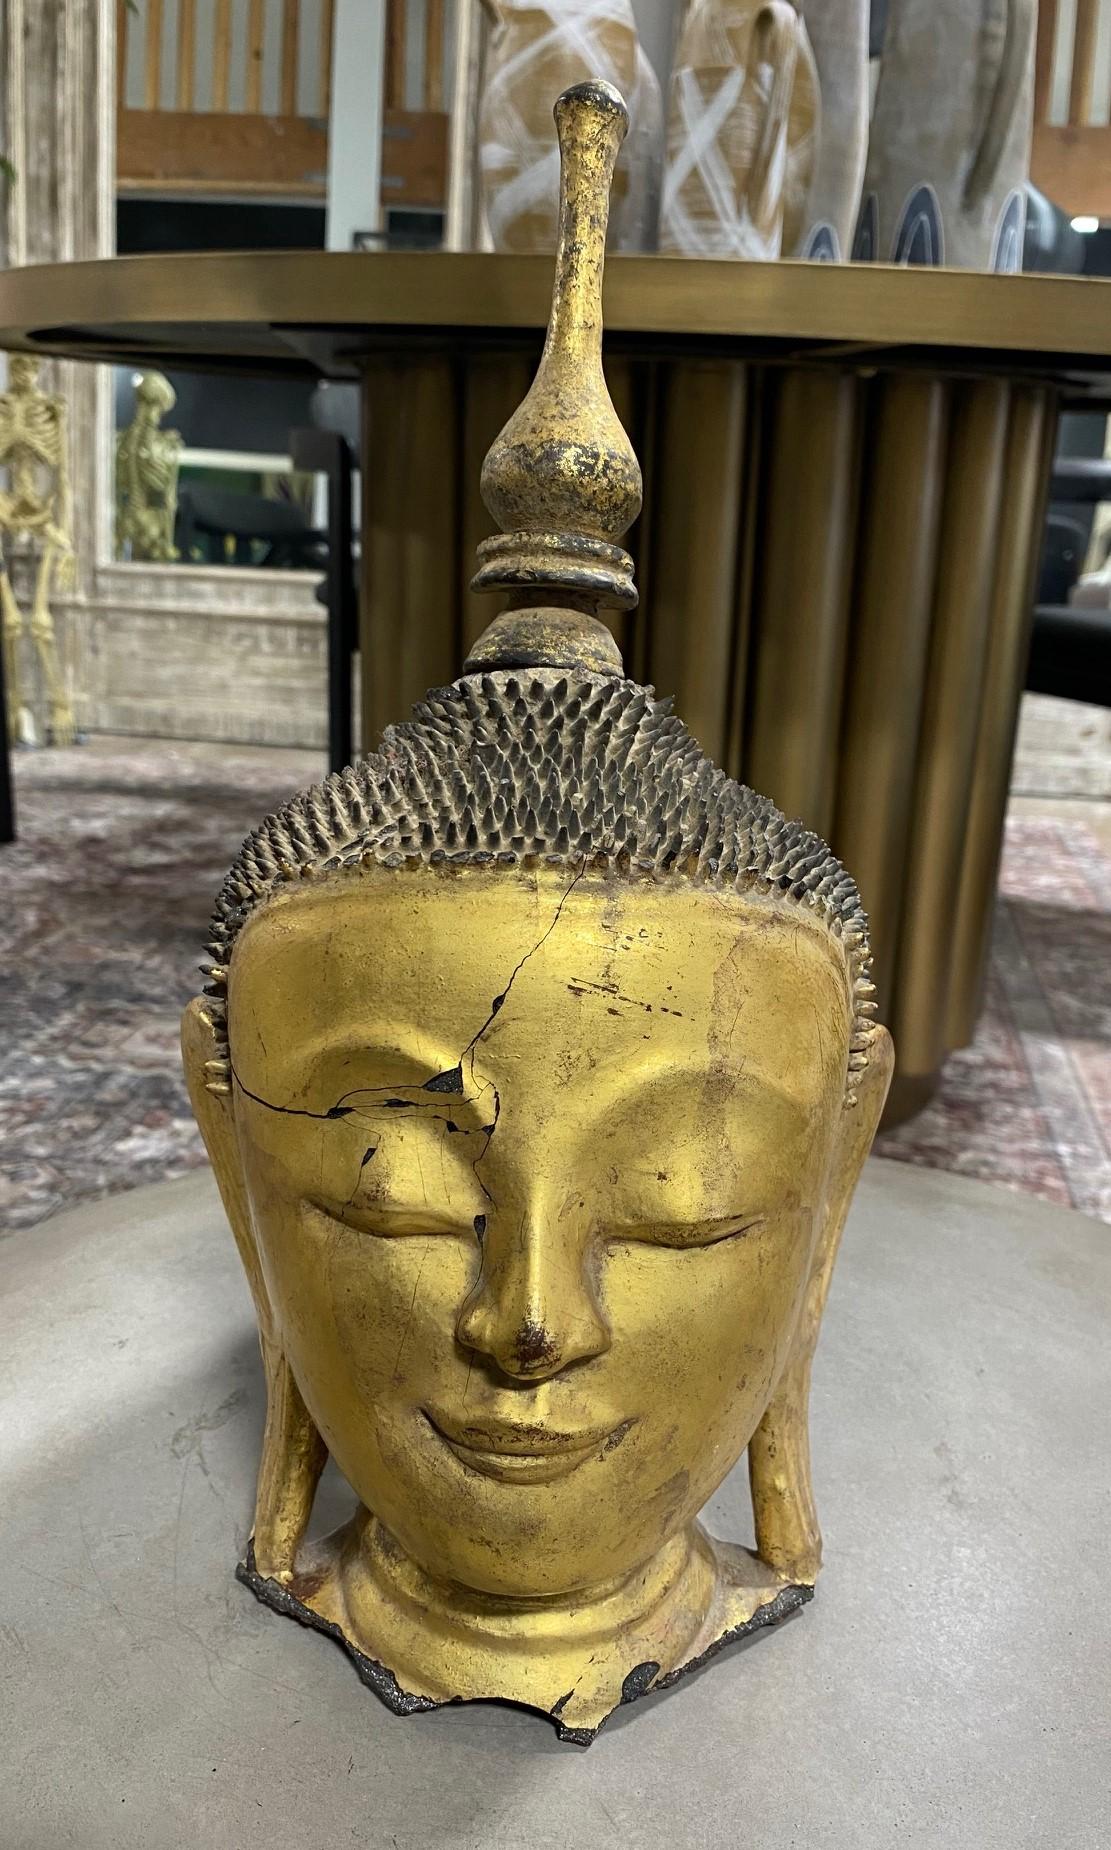 Ein außergewöhnlich schöner, ruhiger, fein gearbeiteter und äußerst seltener birmanischer Buddhakopf/-büste - handgefertigt nach der alten Thayo-Technik, bei der eine Lackpaste verwendet wird, die durch Mischen von Lack mit Holzasche, Reishülsen,